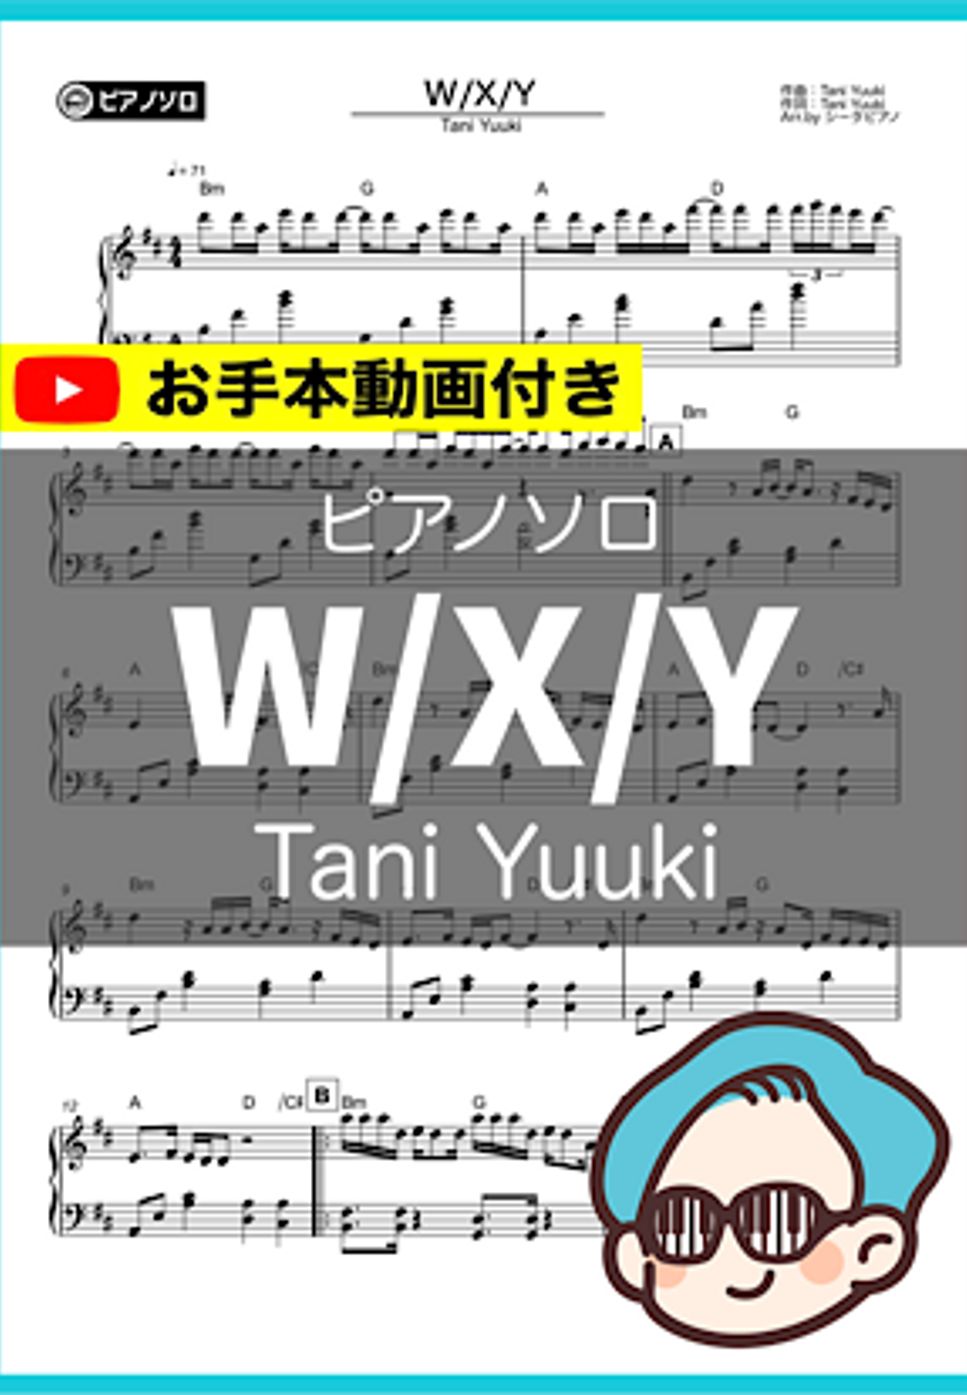 Tani Yuuki - W/X/Y by シータピアノ